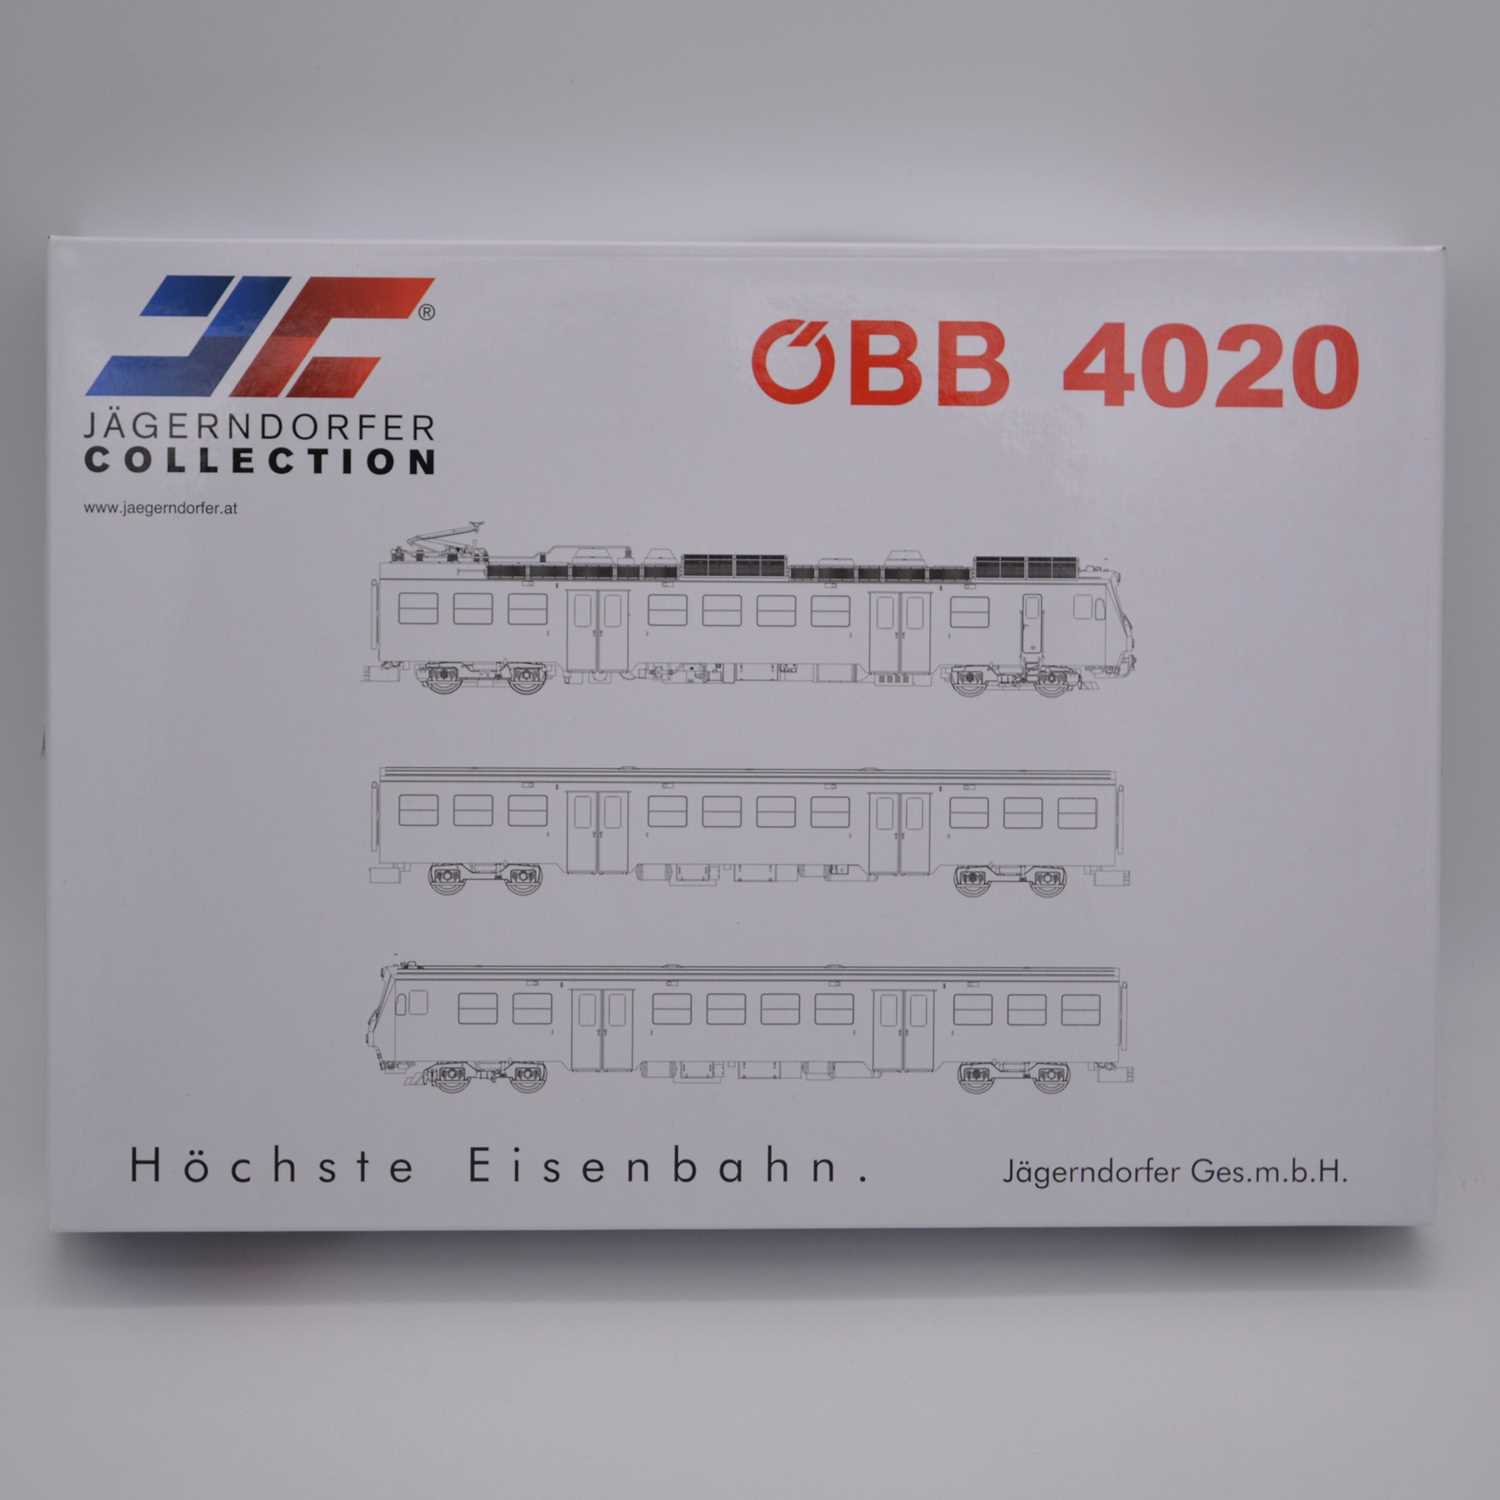 Lot 15 - Jagernorfer Collection HO gauge model locomotive set, ref 40930 OBB 4020 'High Eno edition'